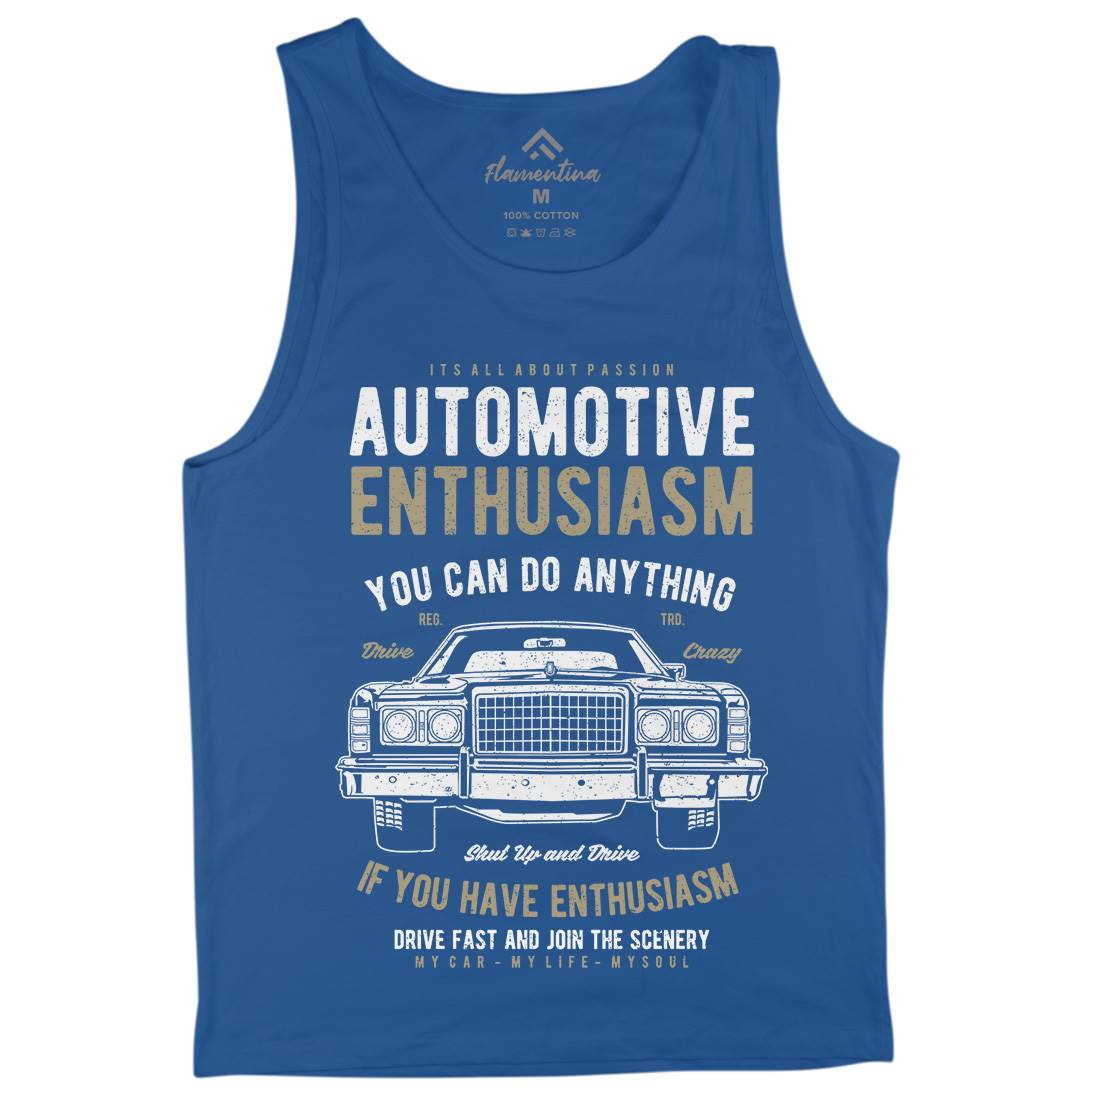 Automotive Enthusiasm Mens Tank Top Vest Cars A614